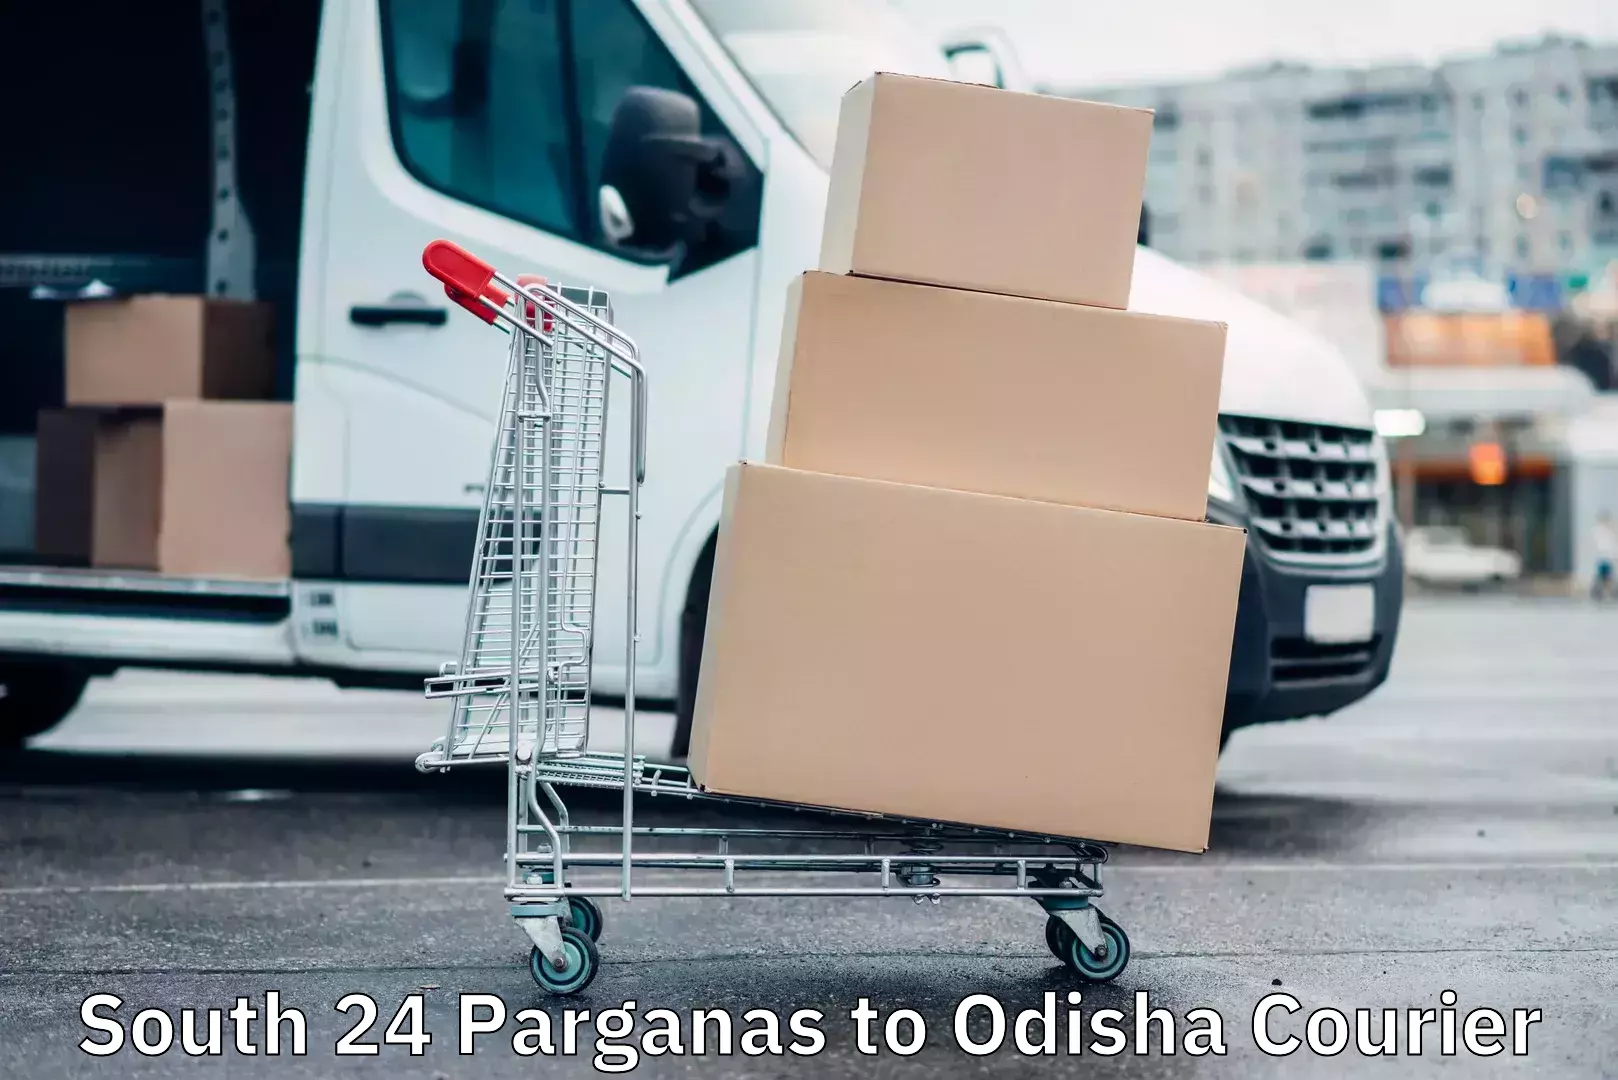 Premium courier solutions South 24 Parganas to Odisha